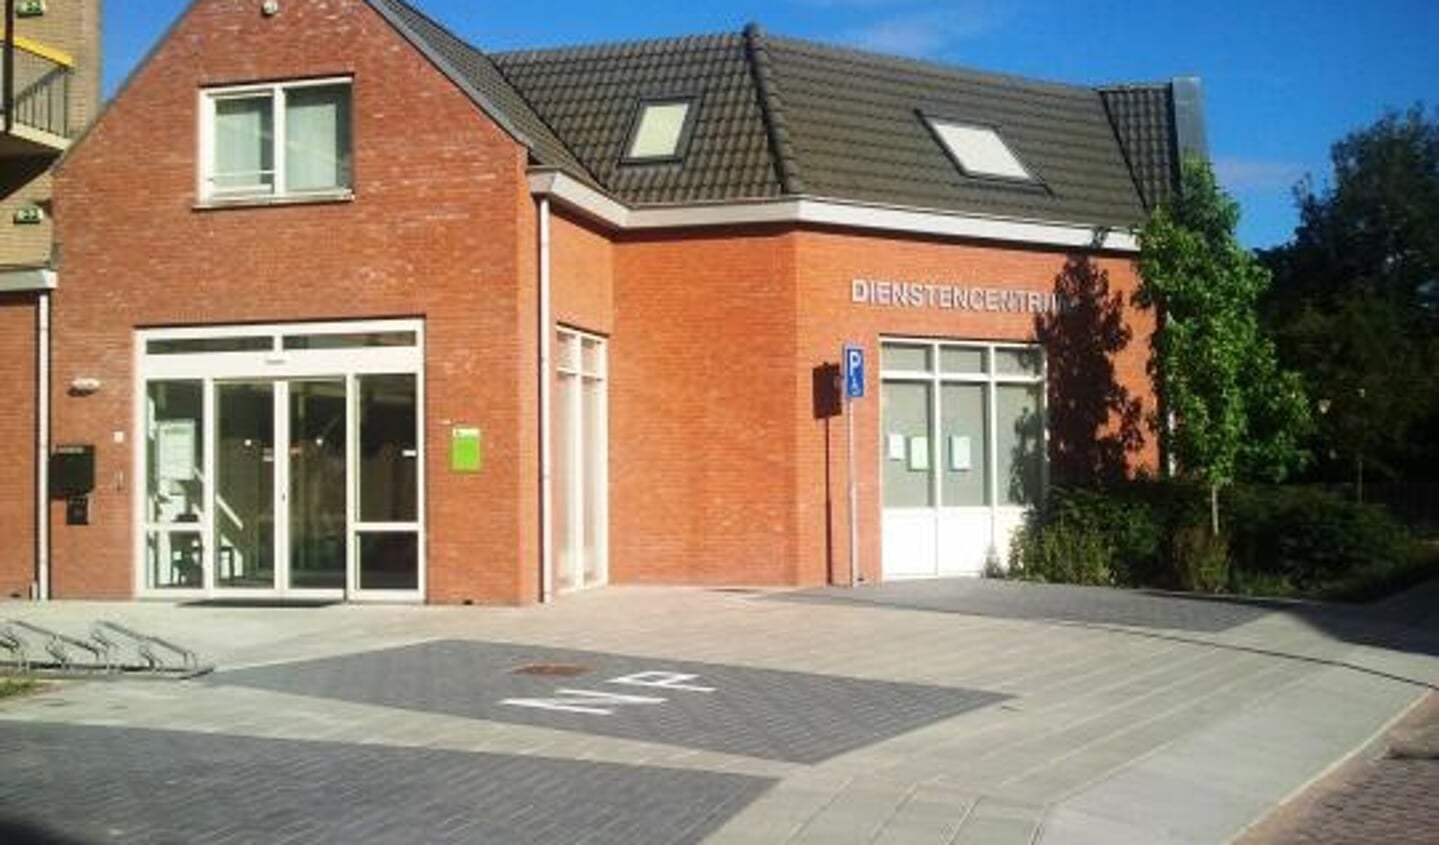 De taalwandeling in Ouderkerk begint bij het Dienstencentrum.